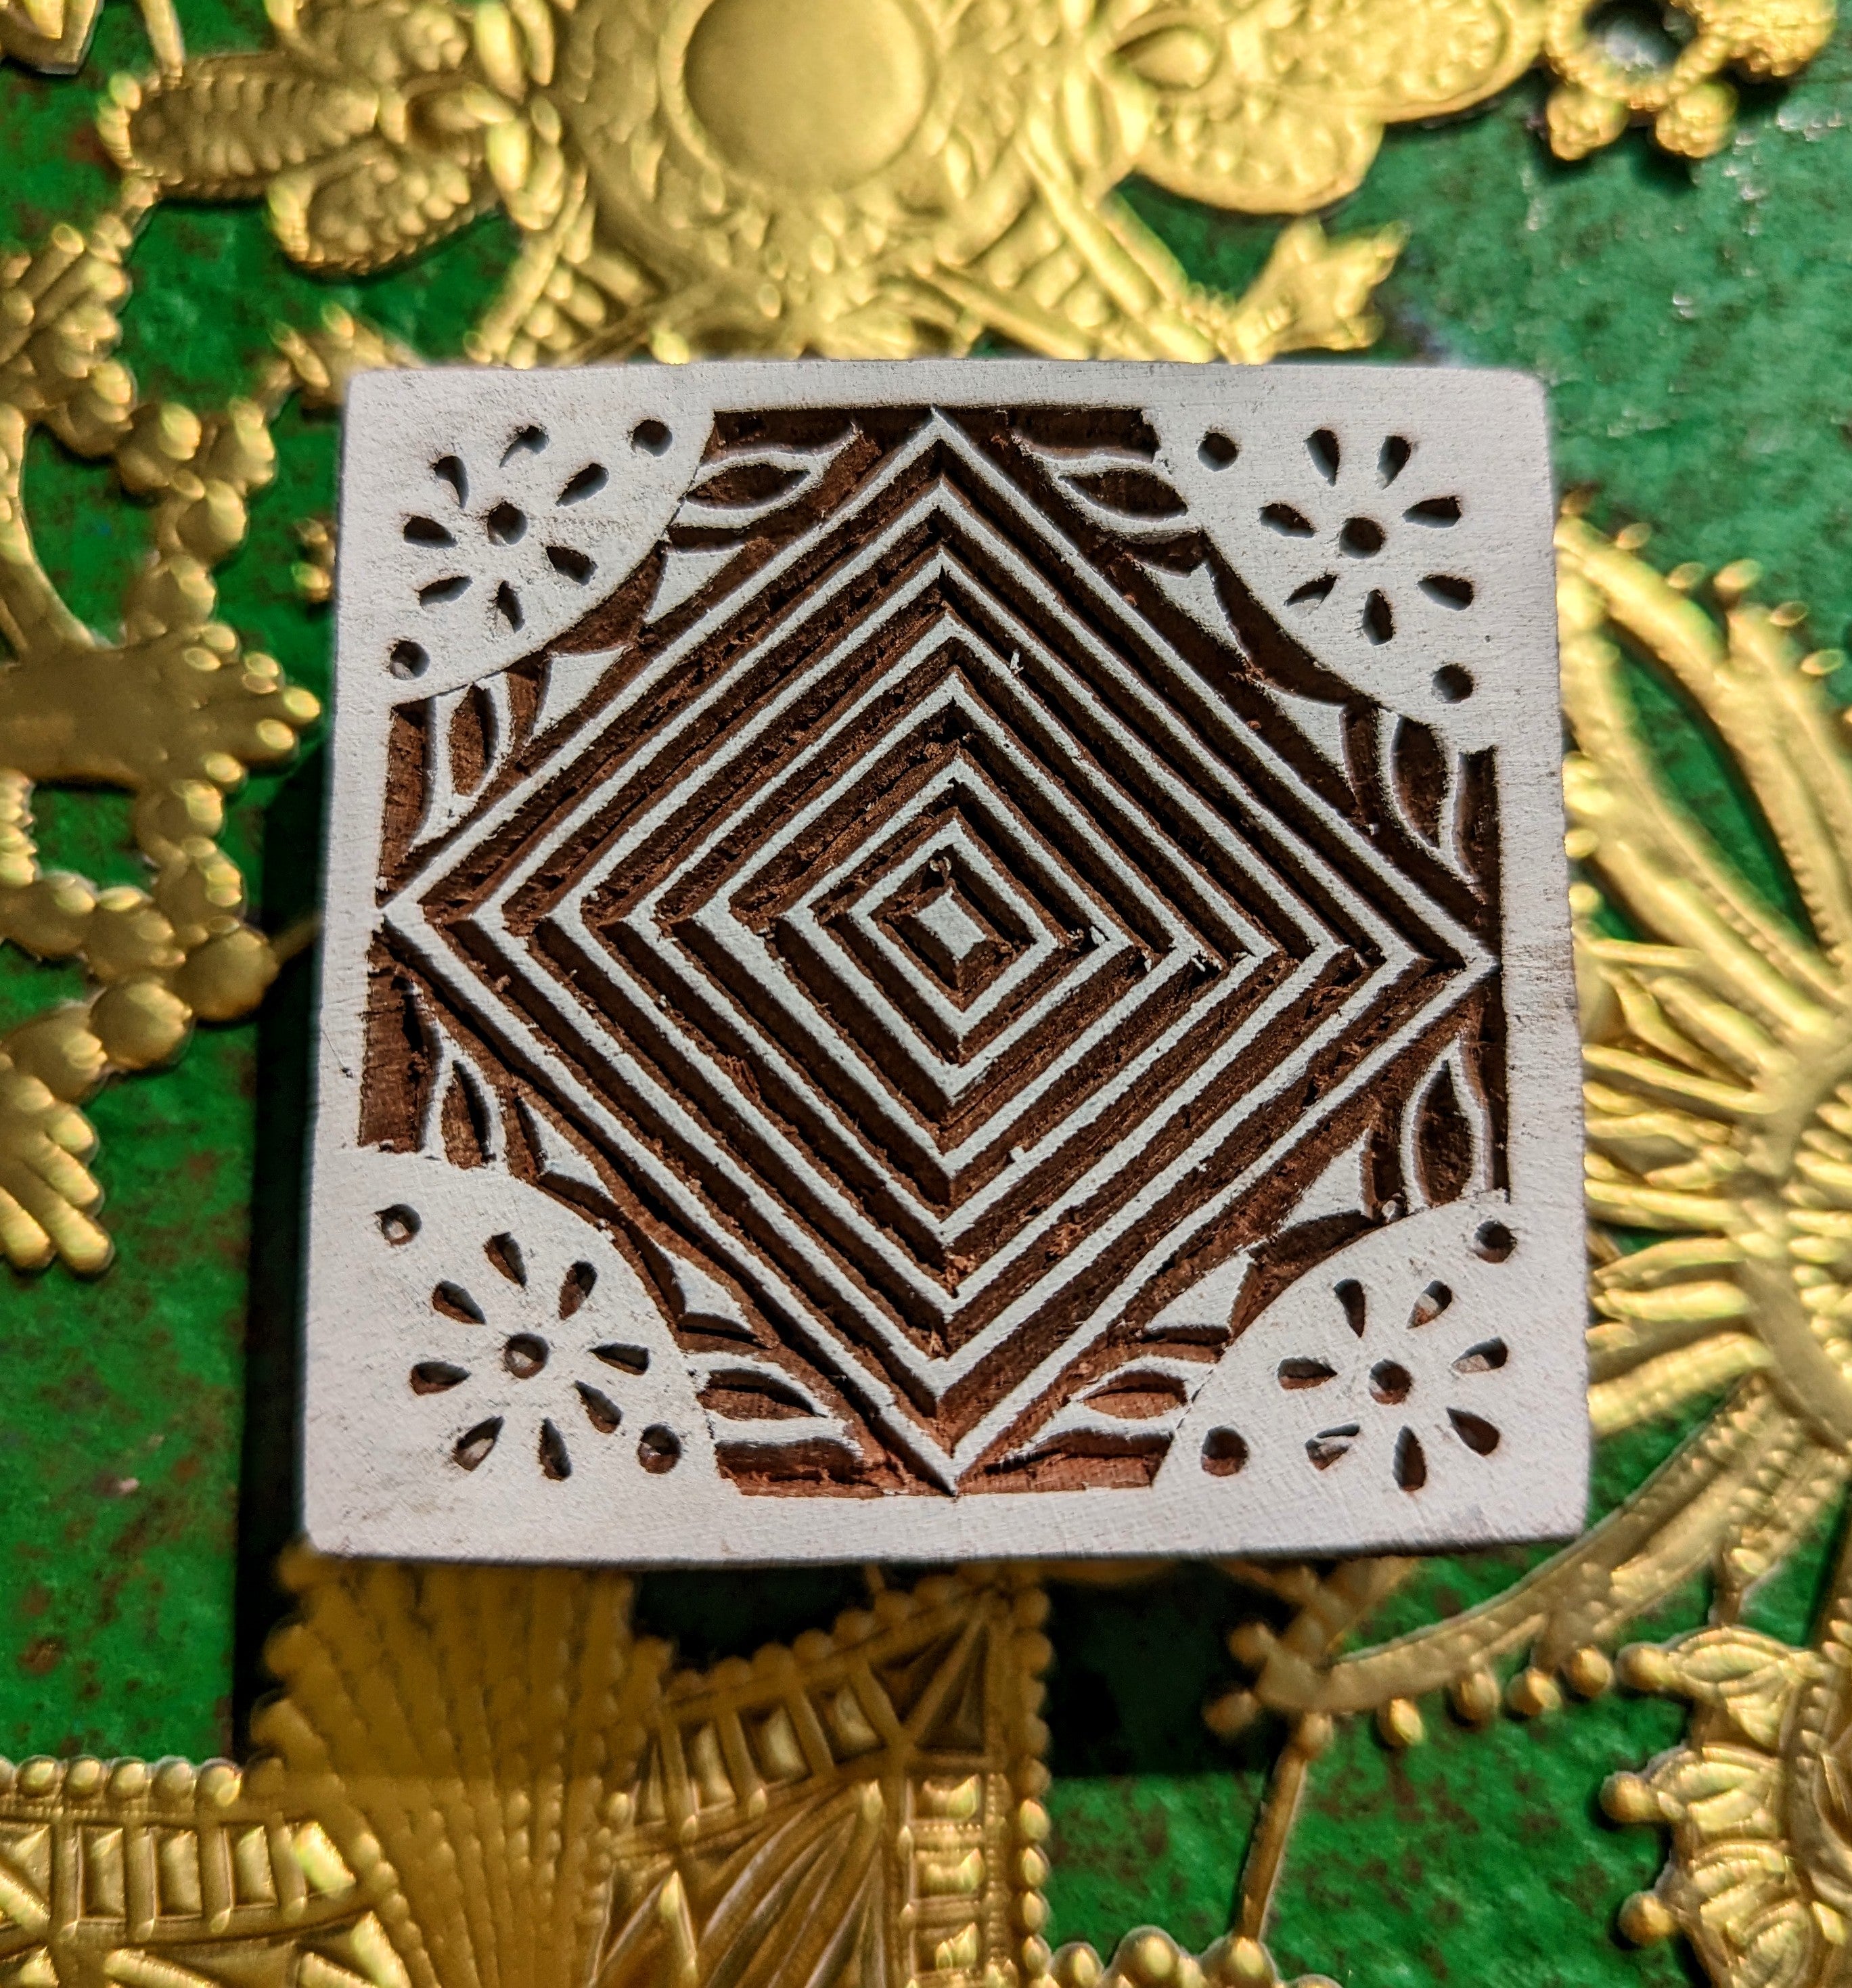 Geometric tile woodblocks